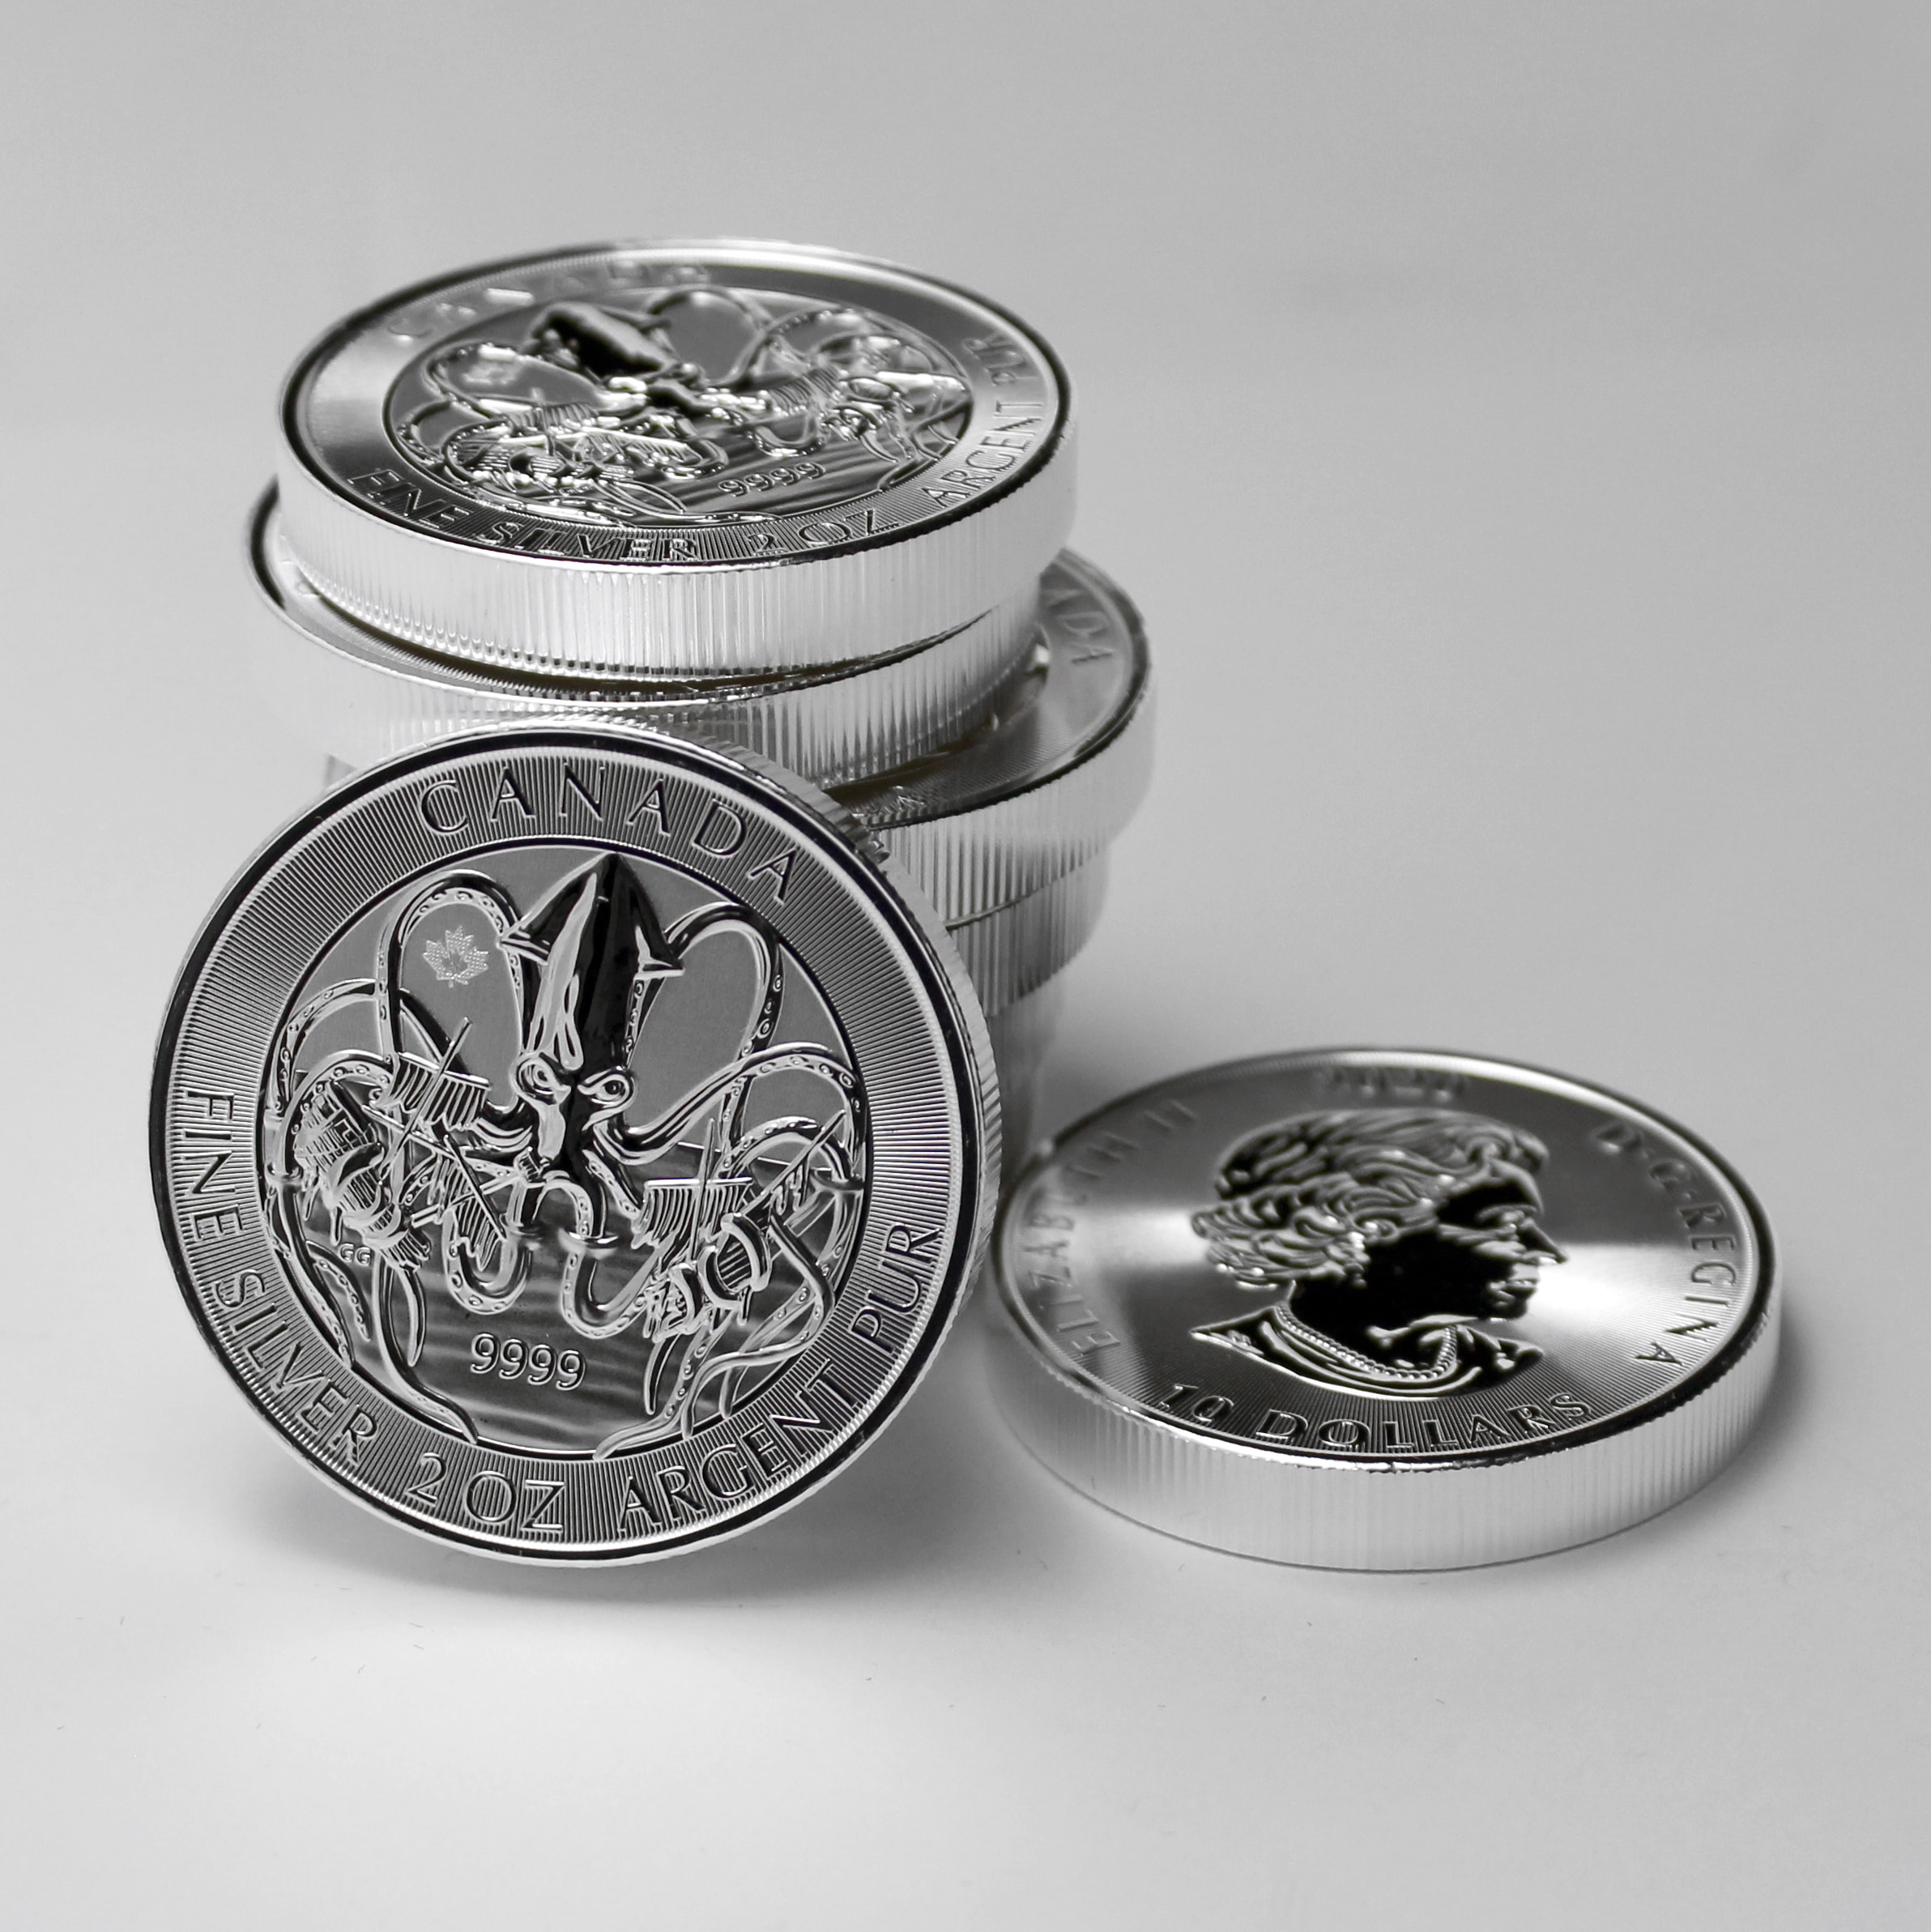 Strieborné mince majú svoju osobitú hodnotu